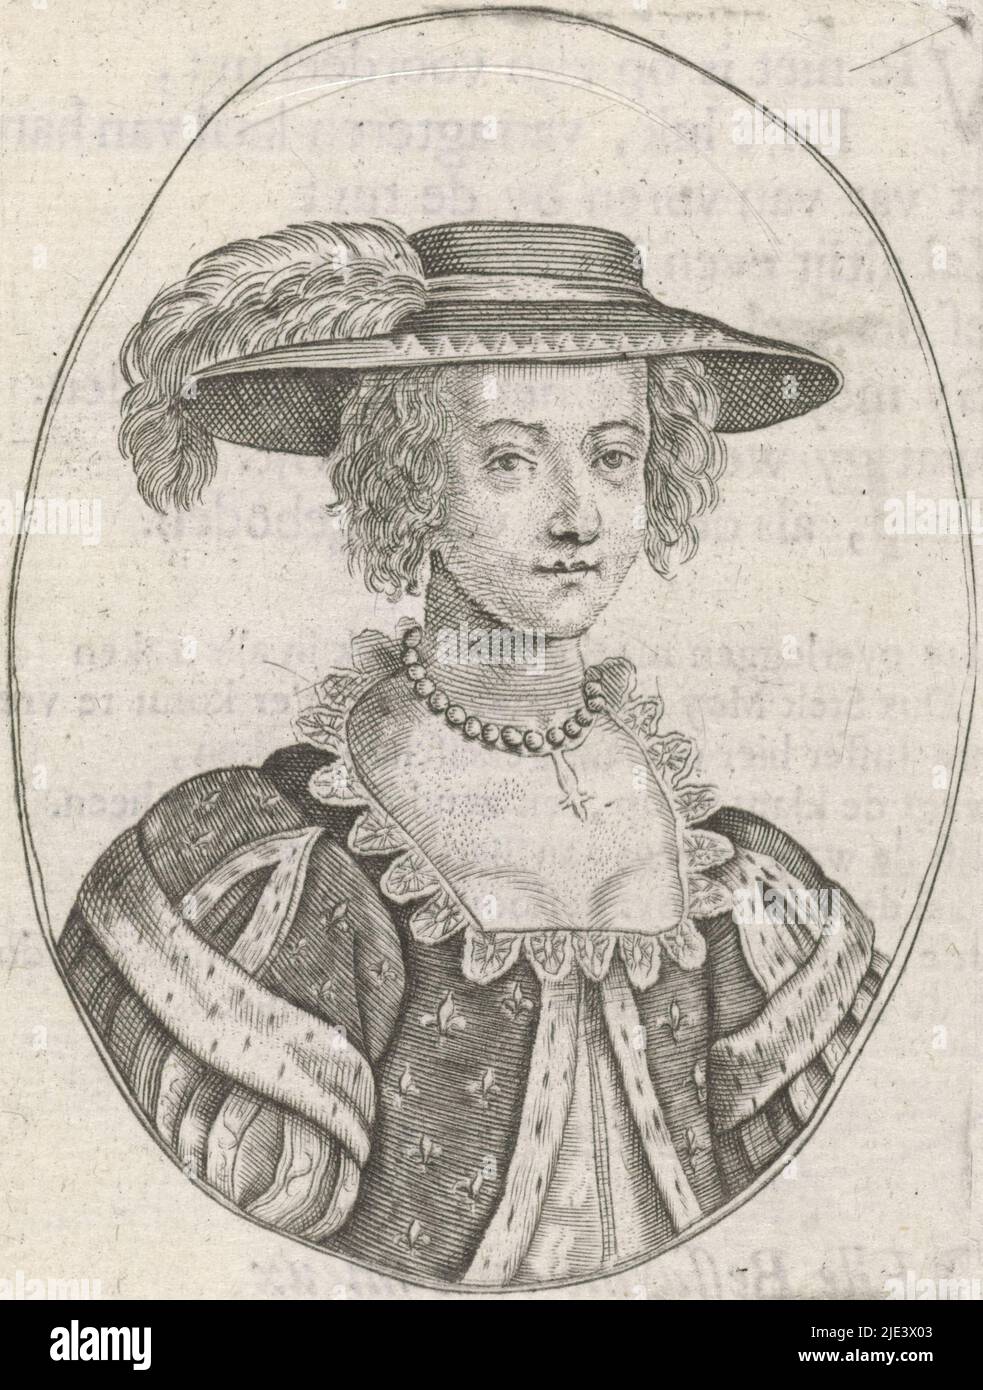 Retrato de un cortesano, anónimo, después de Crispijn van de Passe (II), 1630 - 1710, Retrato de un cortesano vestido de acuerdo a la moda de su tiempo. Copia en espejo imagen después de la mitad derecha de una impresión con dos retratos de Crispijn van de Passe (II)., fabricante de impresión: Anónimo, Crispijn van de Passe (II), desconocido, 1630 - 1710, papel, grabado, impresión de tipografía, al. 85 mm x al. 63 mm, al. 97 mm x al. 70 mm Foto de stock